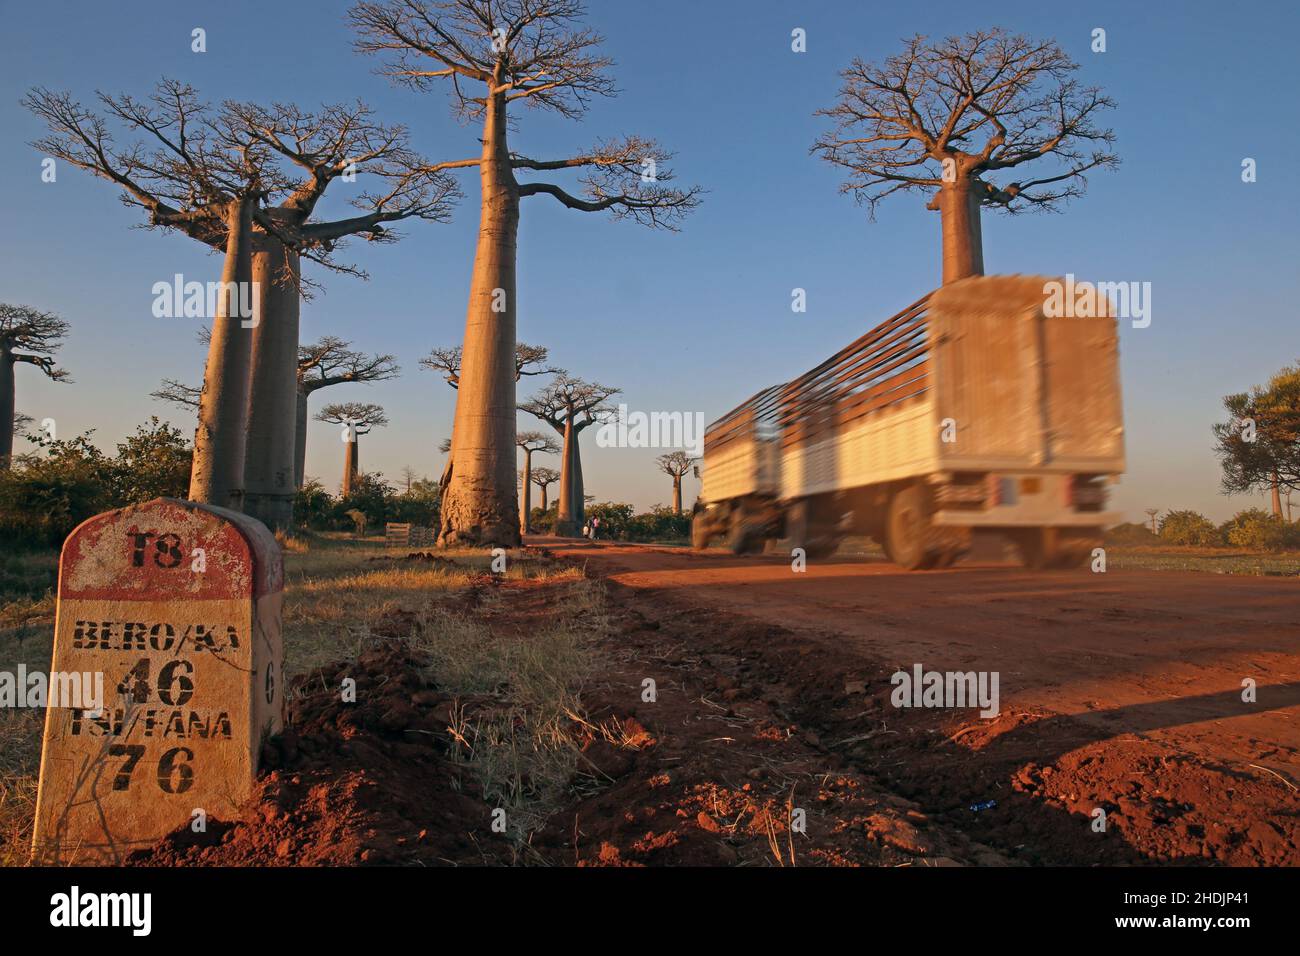 baobab-Baum, Allee der Baobabs, Baobab-Bäume, Allee der Baobabs Stockfoto